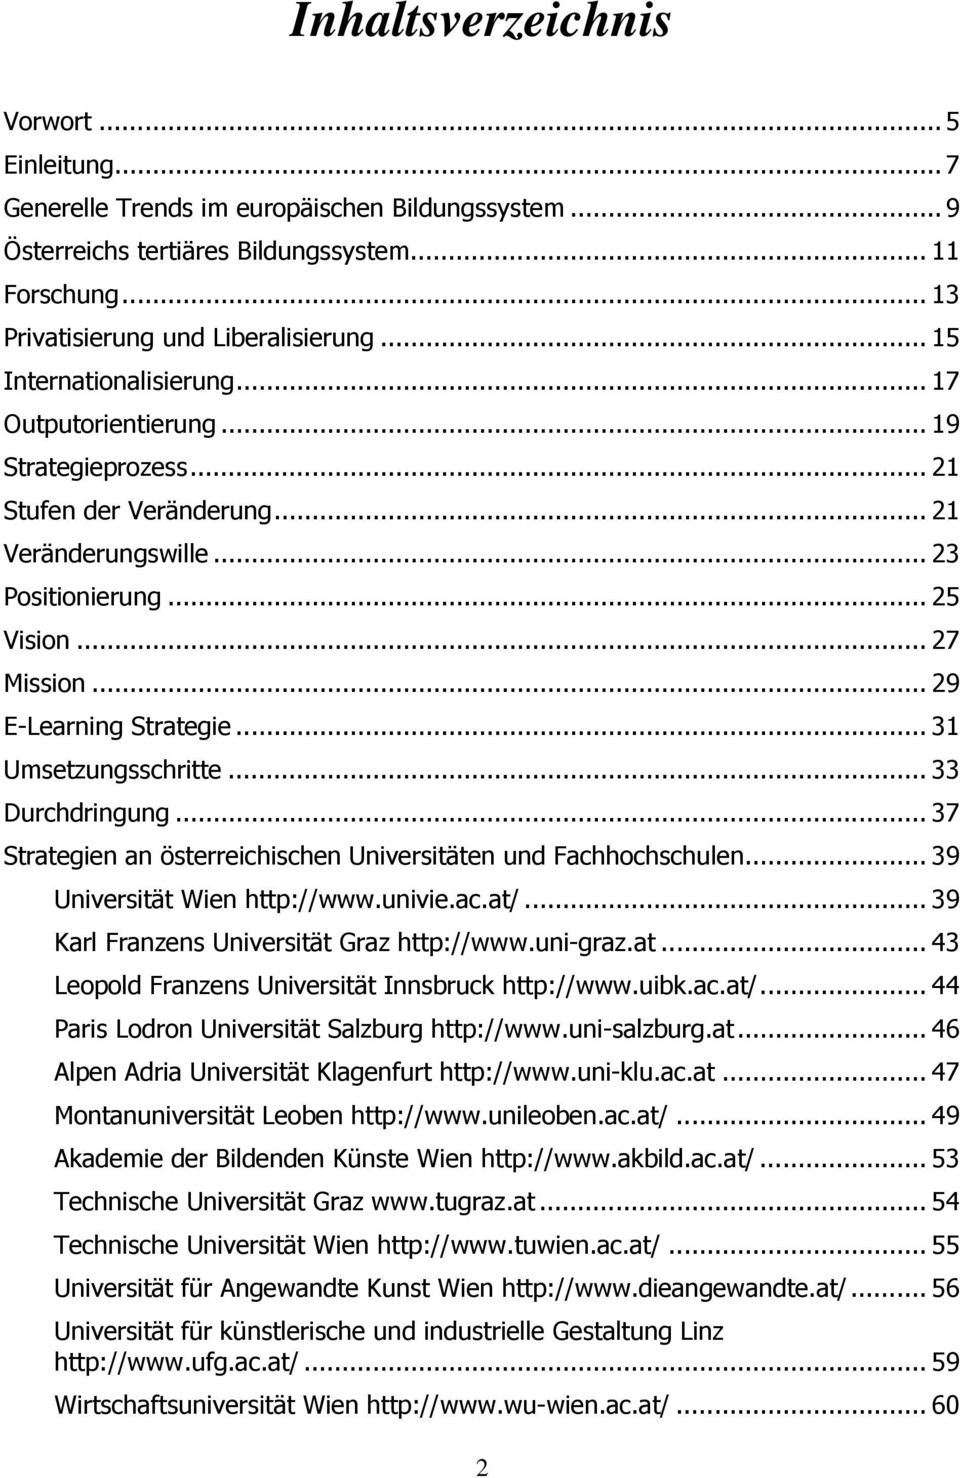 .. 29 E-Learning Strategie... 31 Umsetzungsschritte... 33 Durchdringung... 37 Strategien an österreichischen Universitäten und Fachhochschulen... 39 Universität Wien http://www.univie.ac.at/.